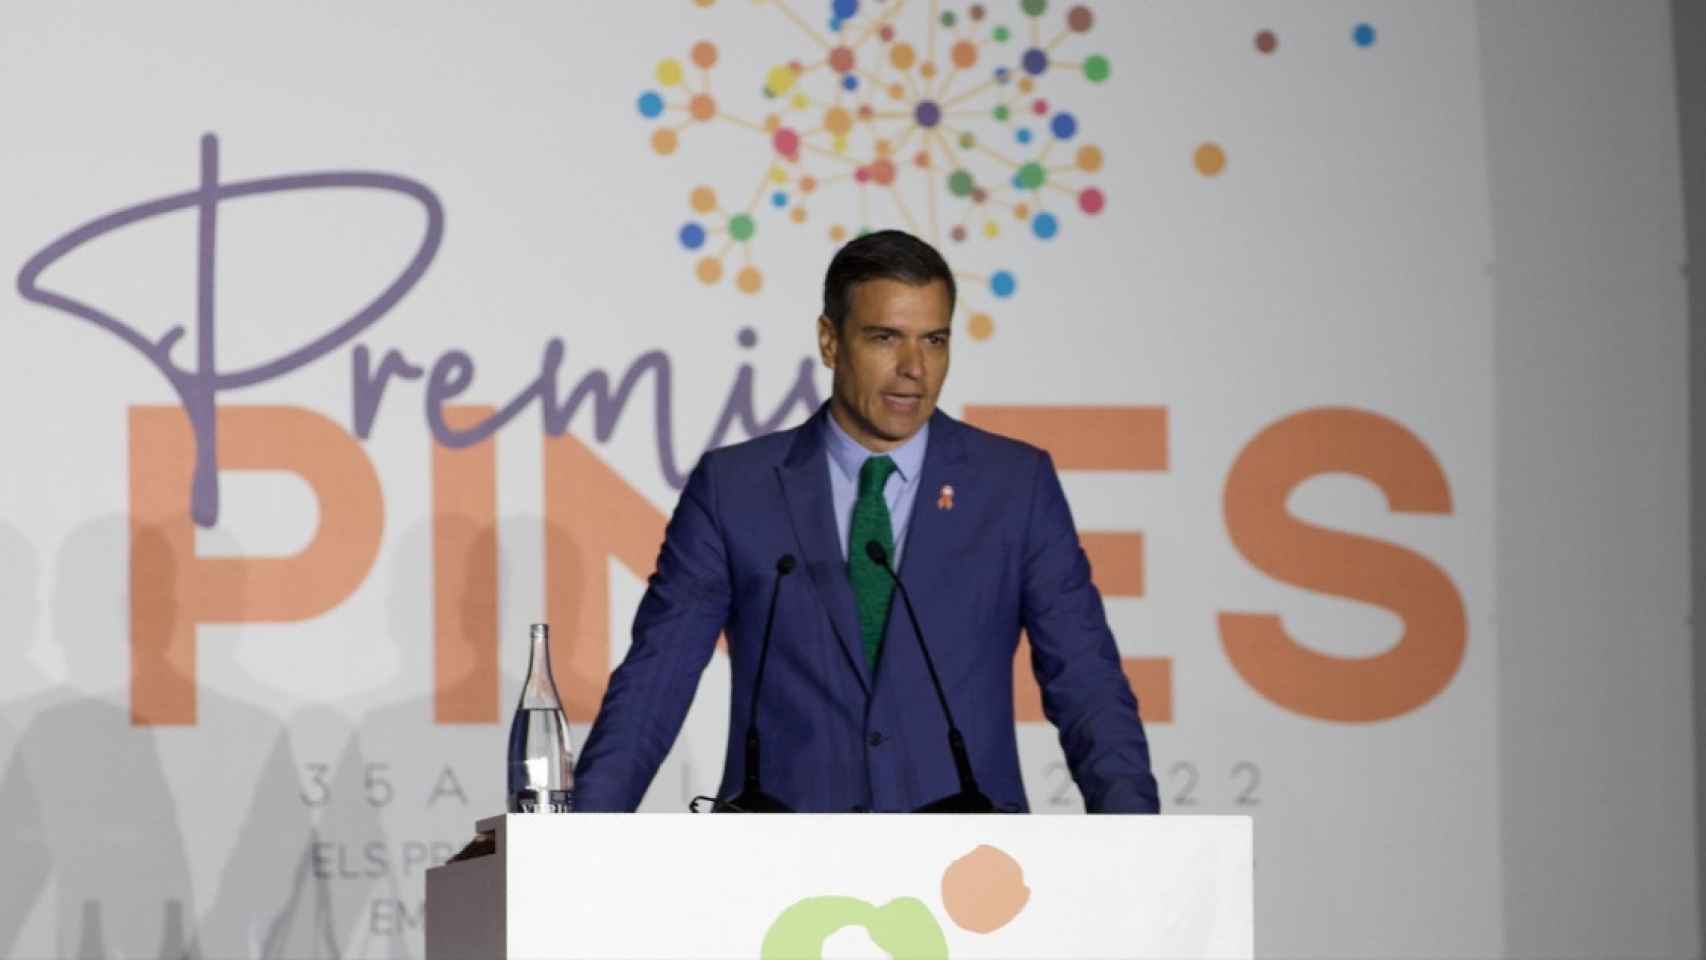 El presidente del Gobierno, Pedro Sánchez, interviene en los Premios Pymes 2022 / Gala Espín (Crónica Global)